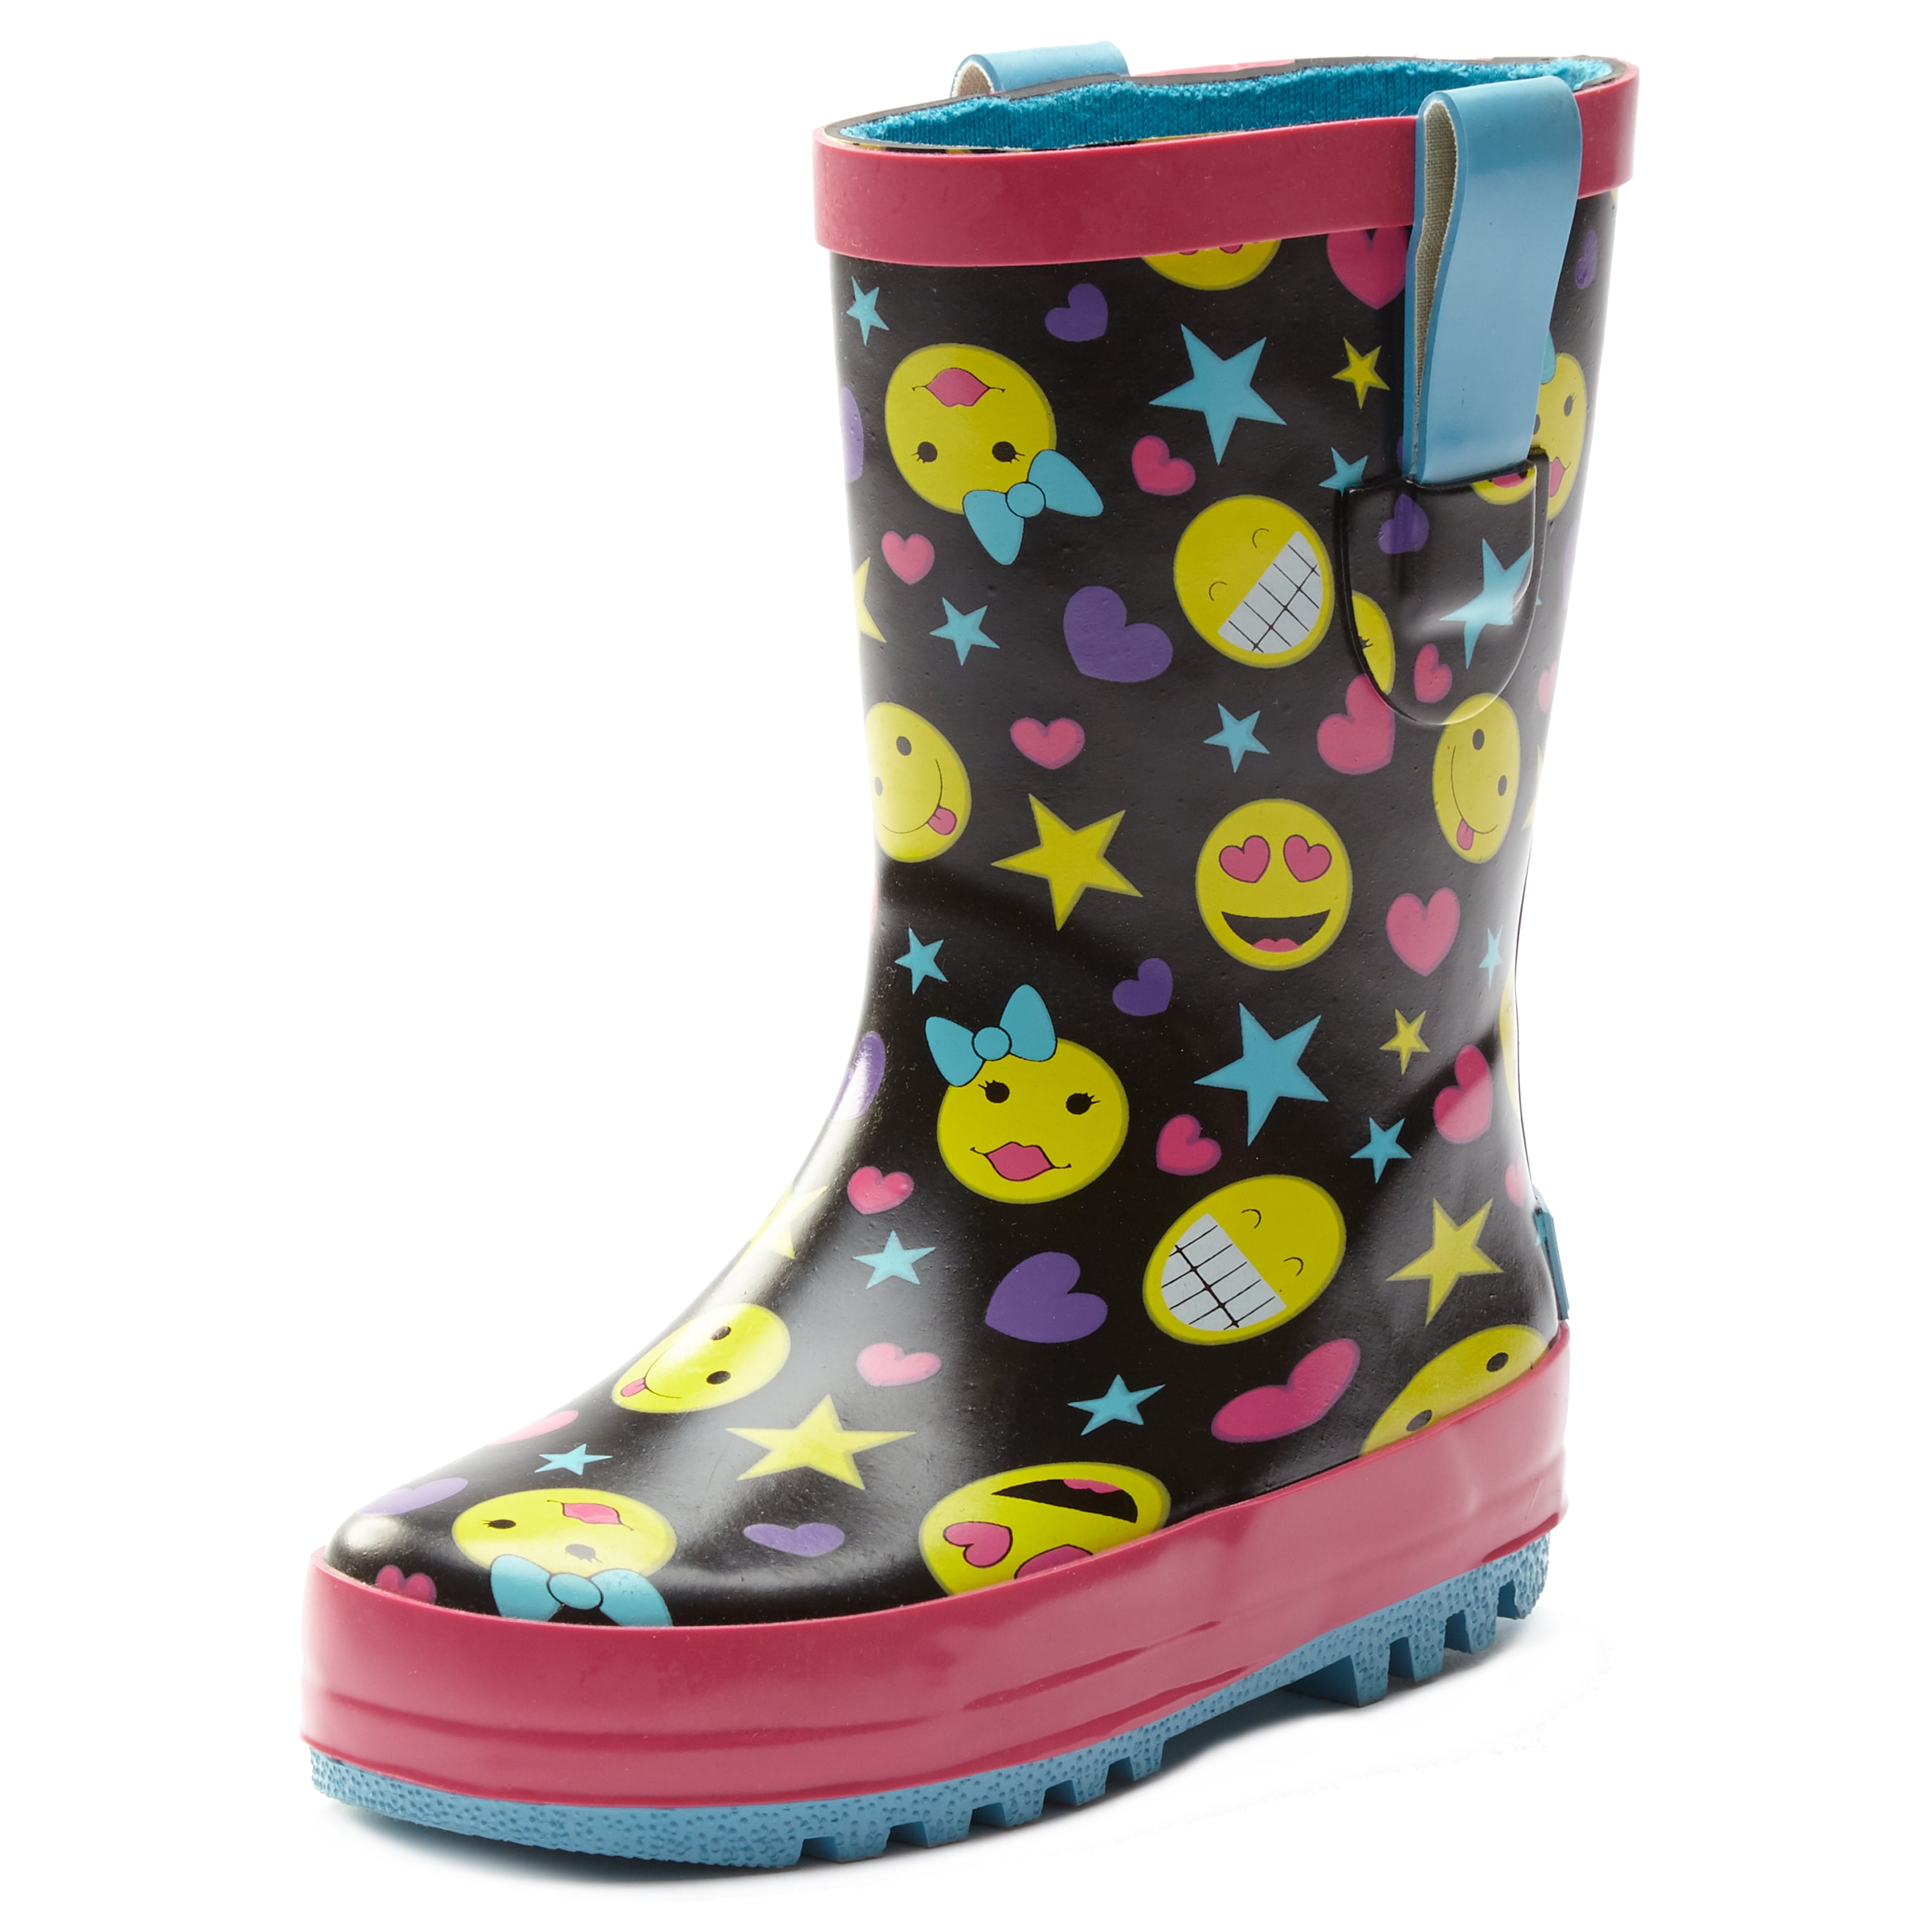 Northside - Northside Kids Bay Rubber Rain Boot Easy On Toddler/Little